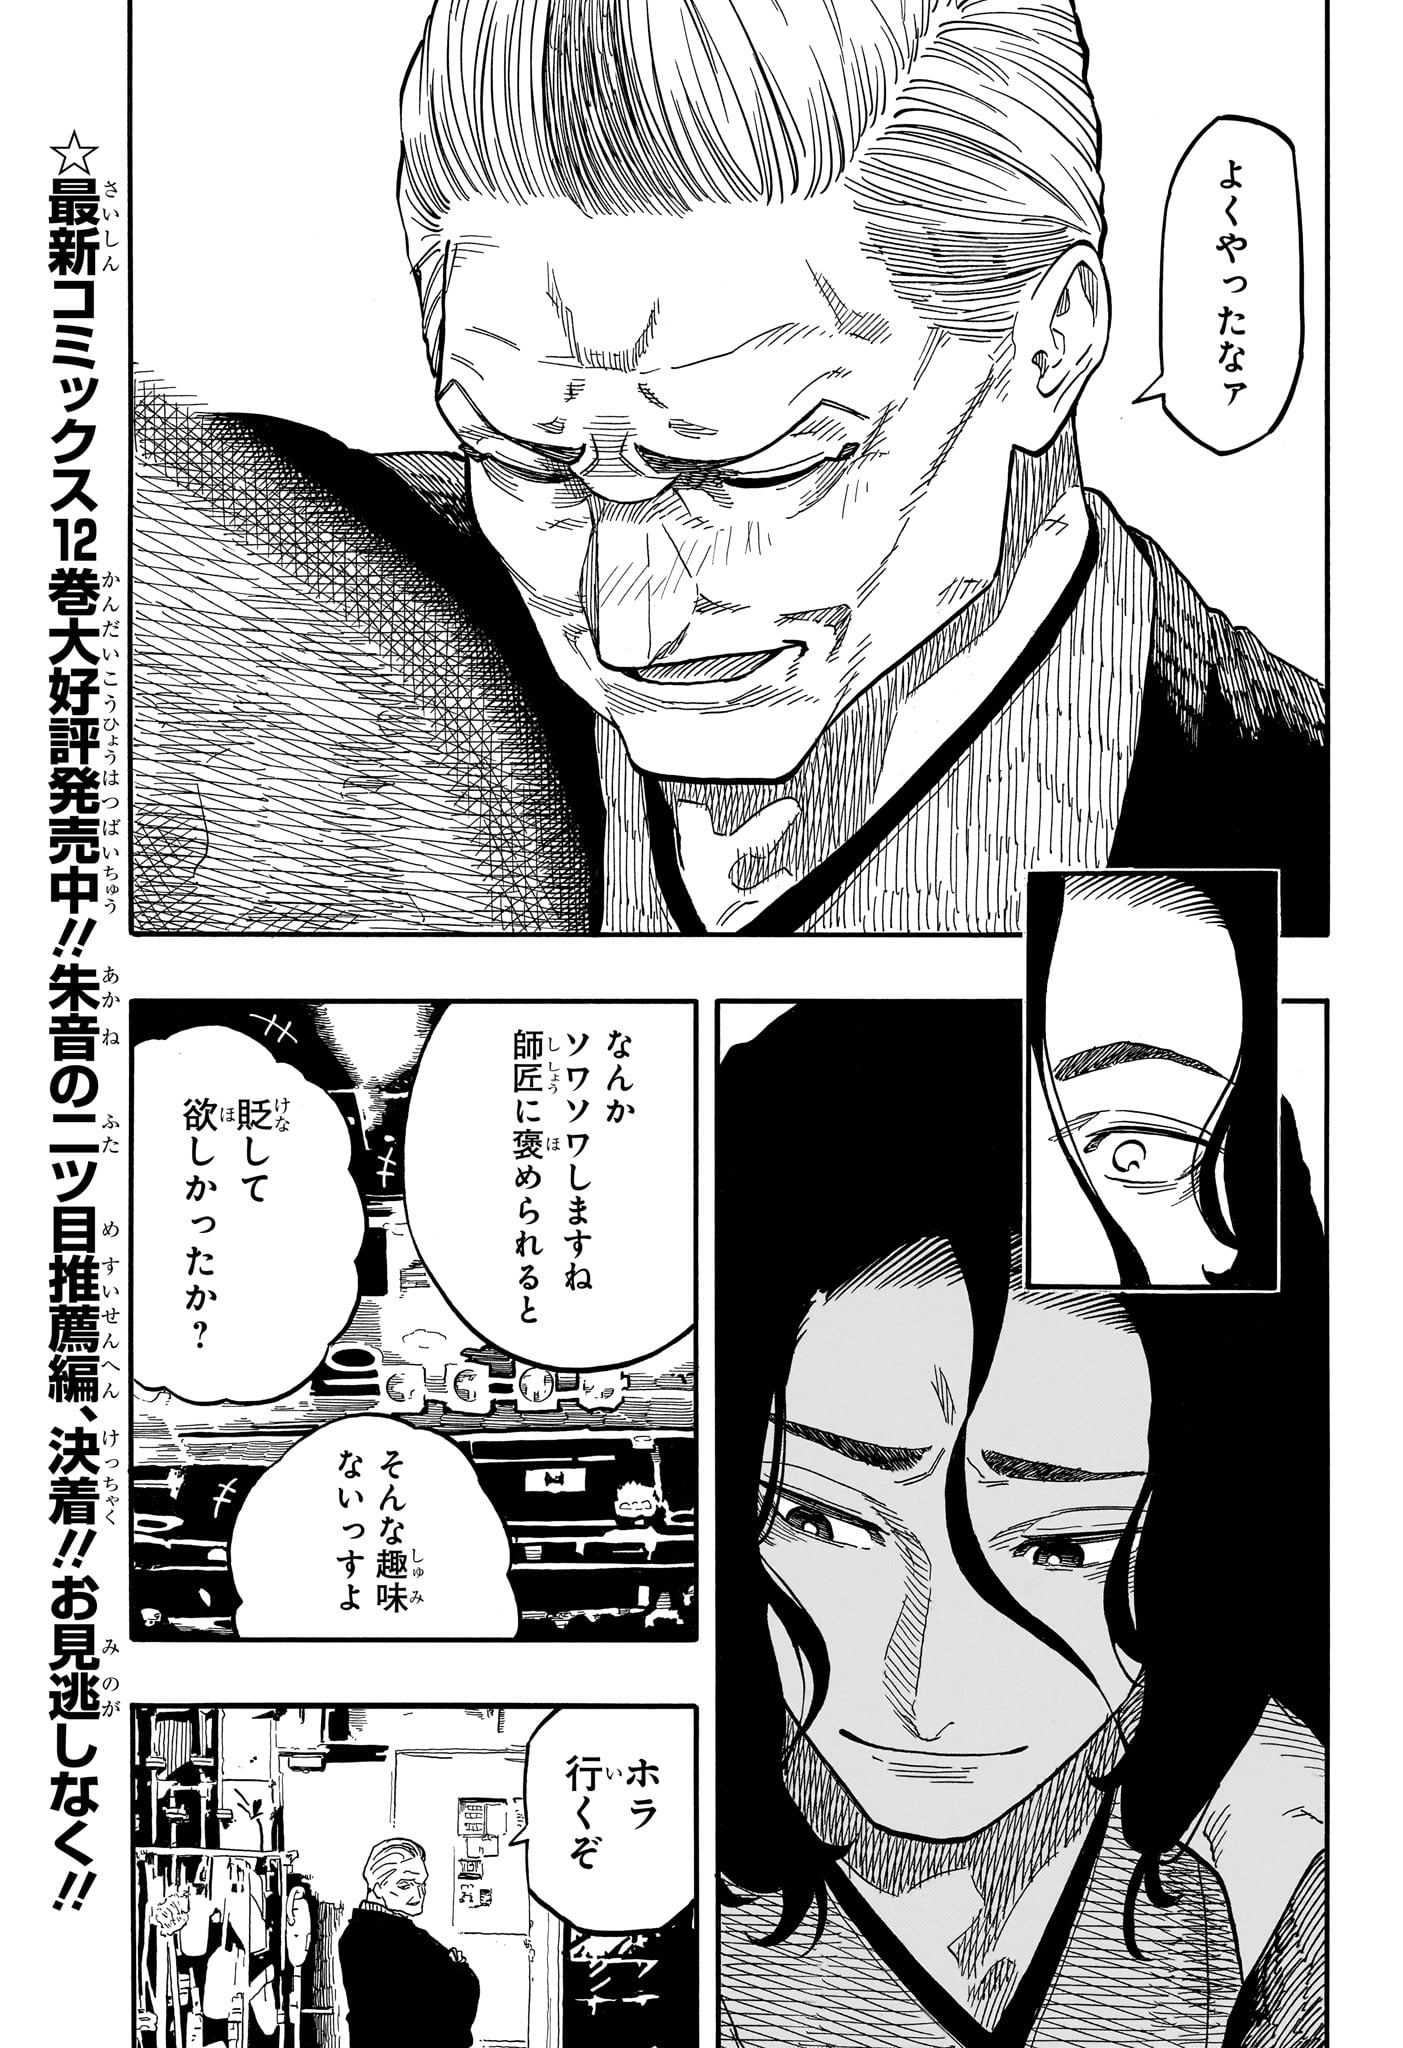 Akane-Banashi - Chapter 117 - Page 3